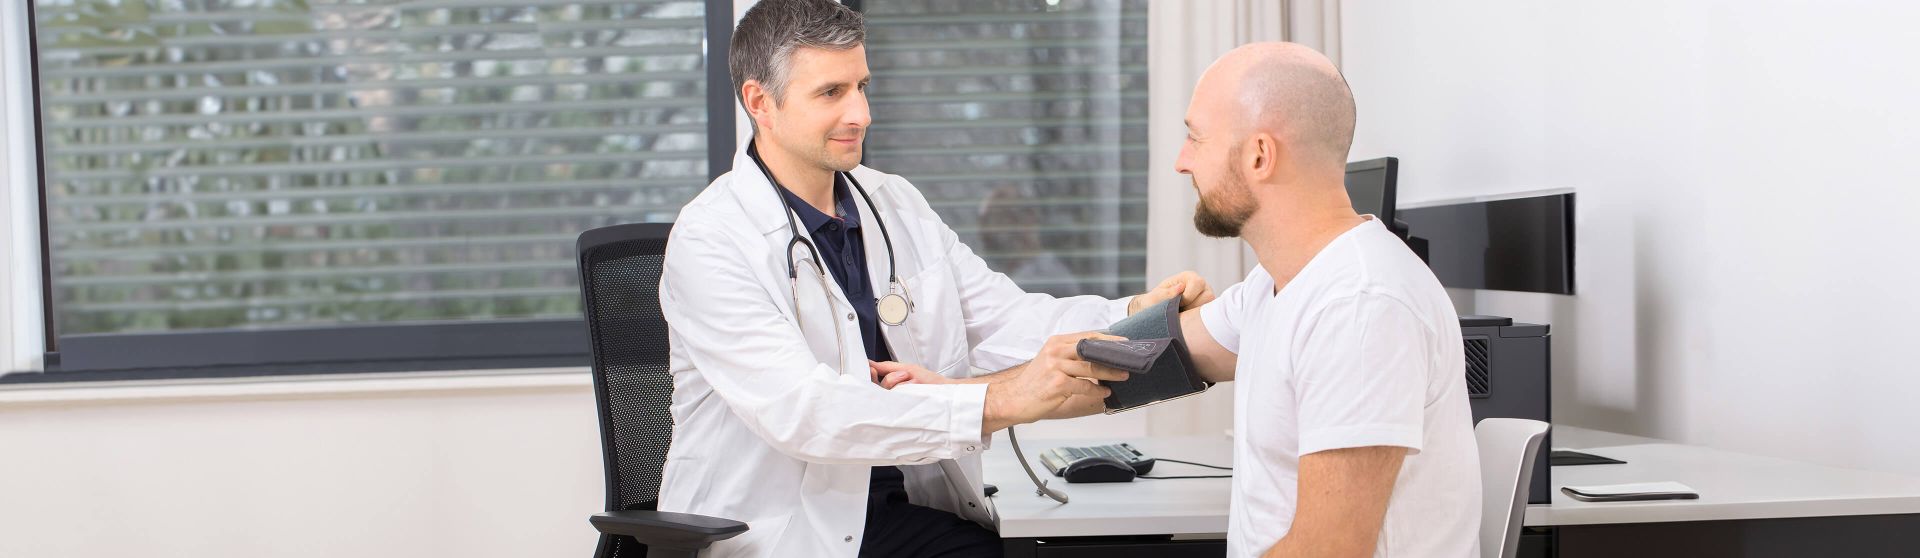 Arzt misst den Blutdruck eines Patienten.